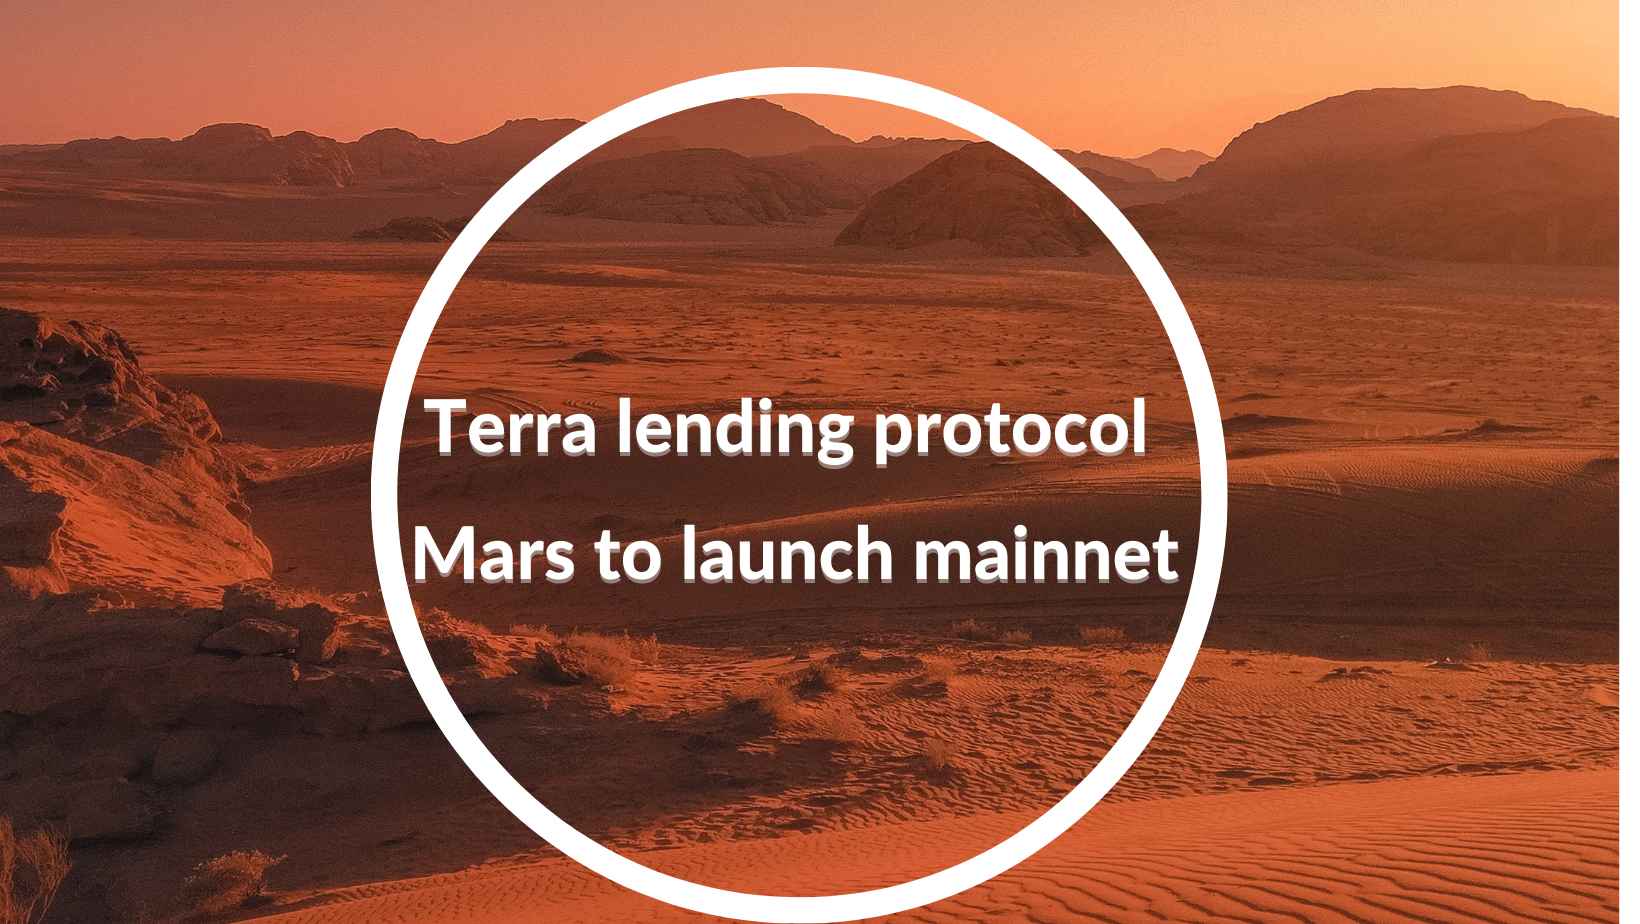 Terra lending protocol Mars to launch mainnet